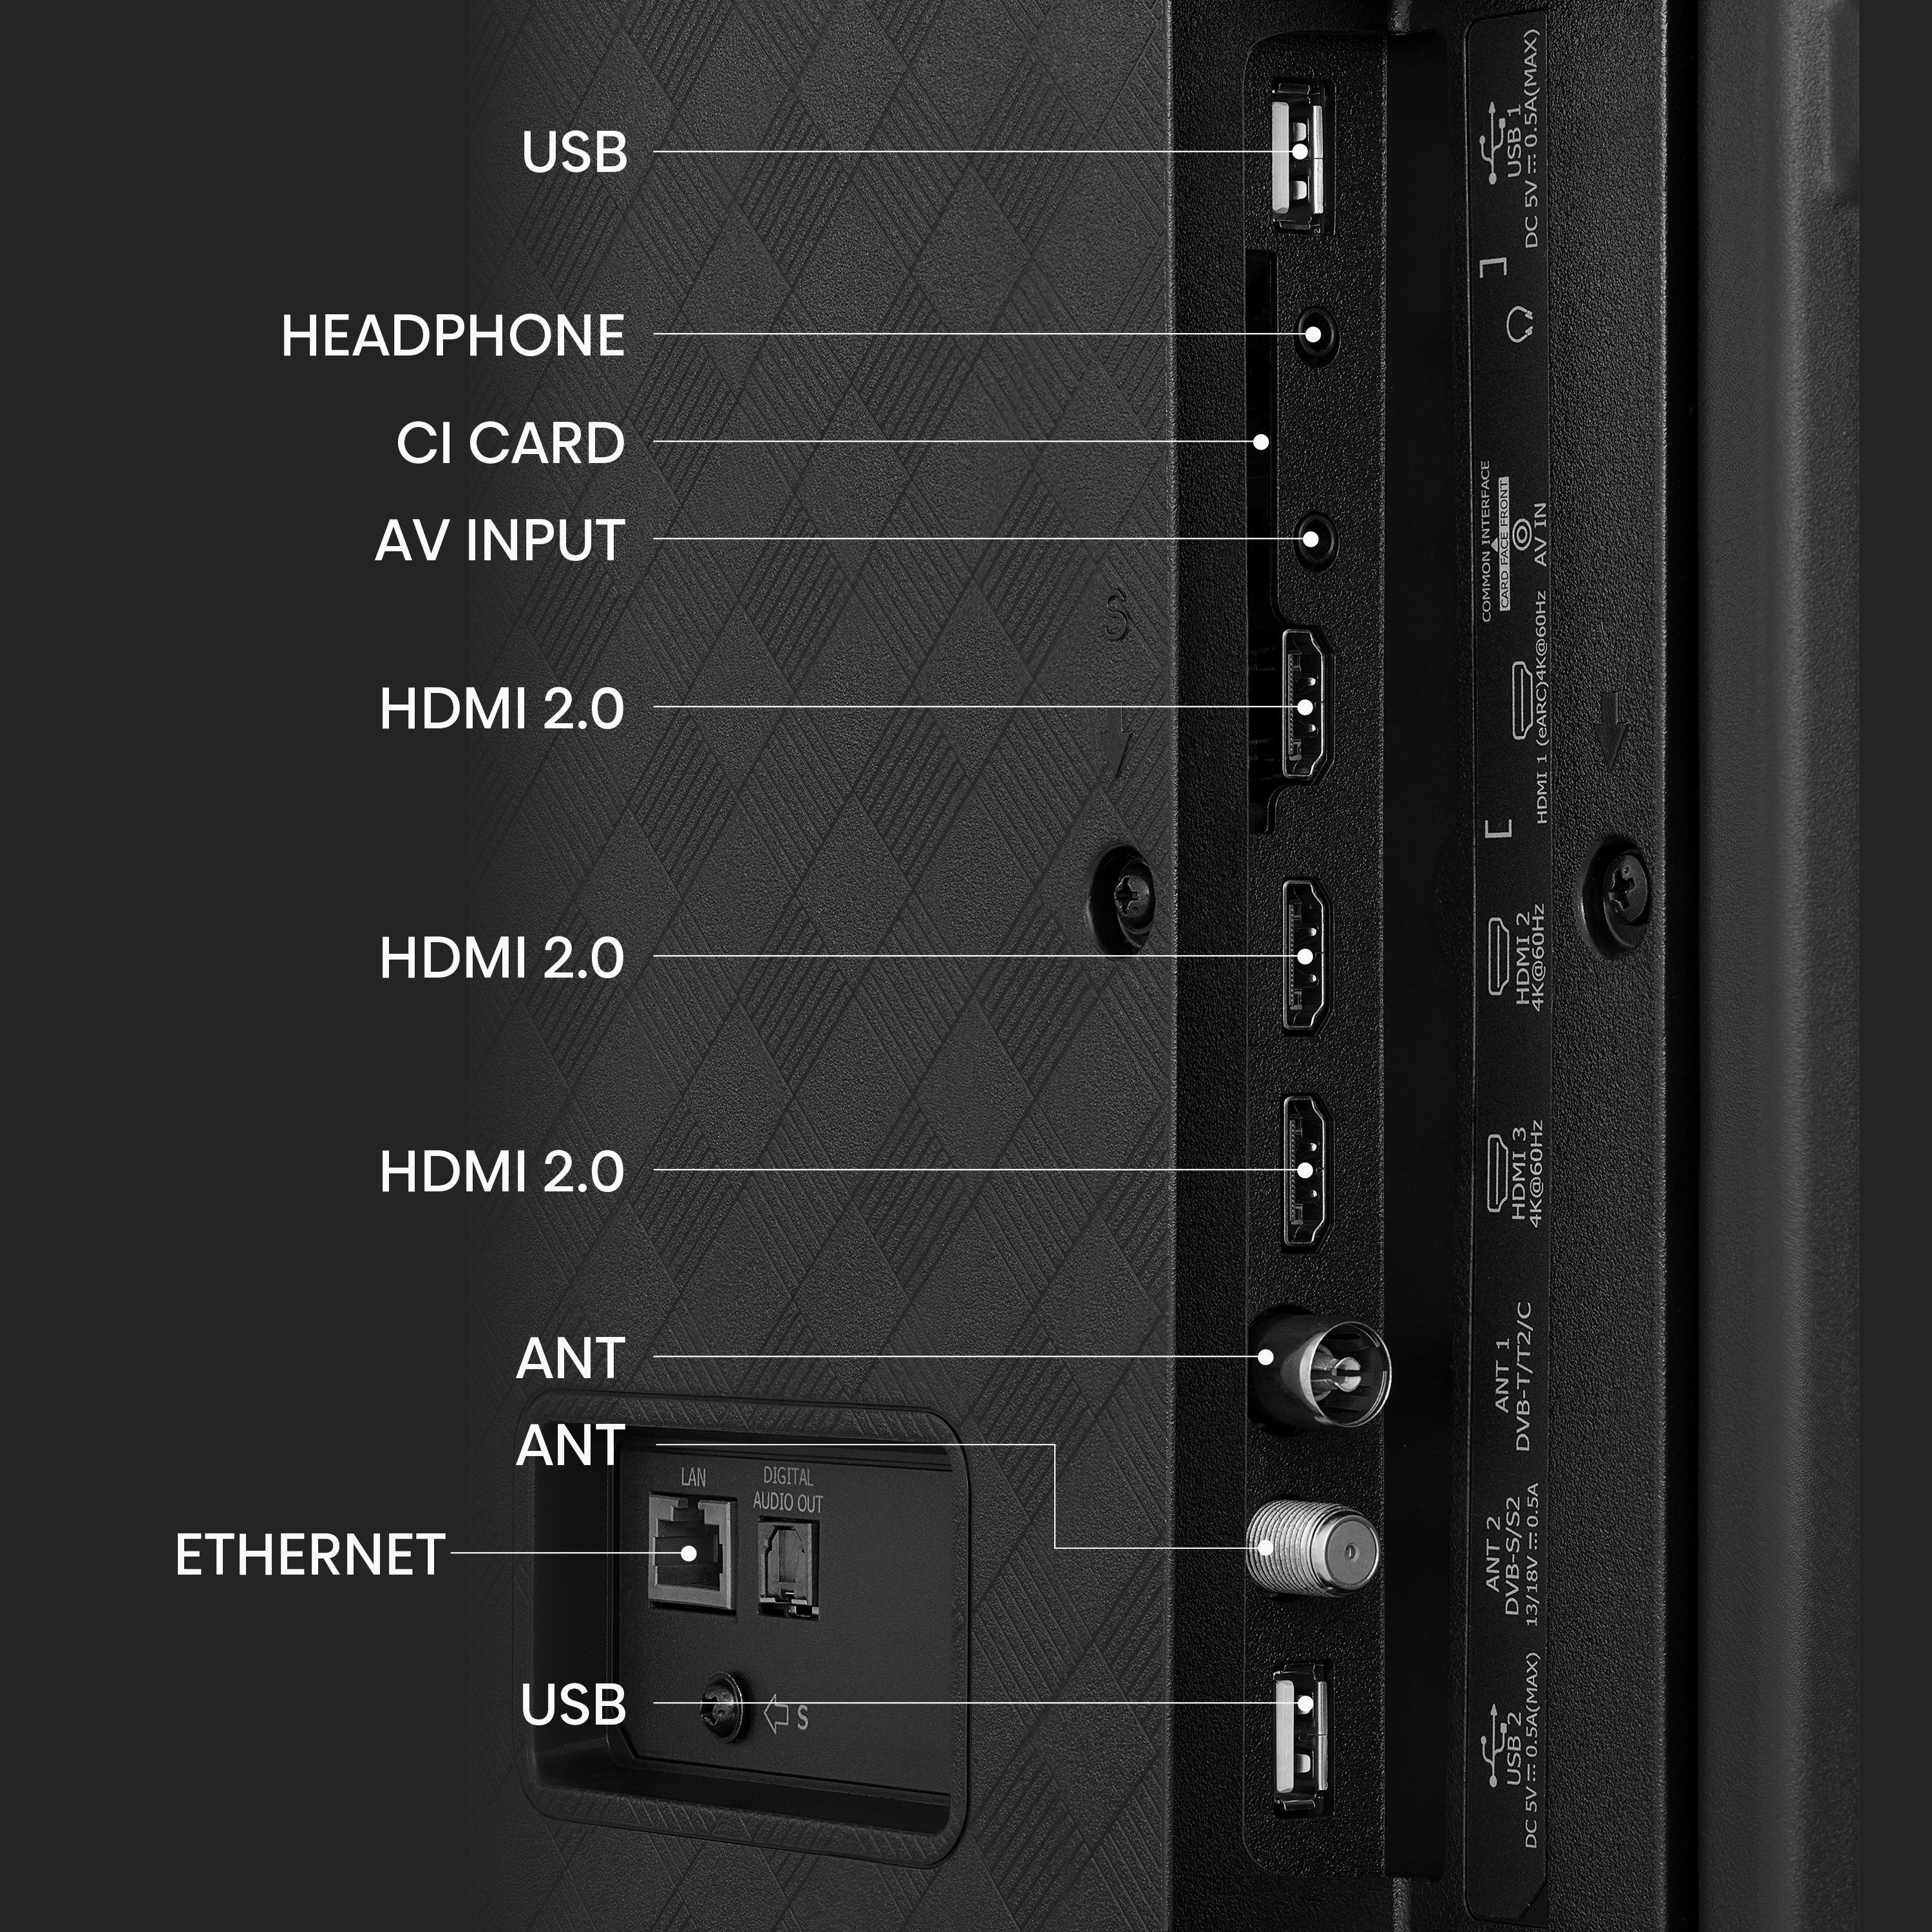 HISENSE 65A6K LED TV (Flat, SMART cm, / UHD 164 TV) Zoll 65 4K